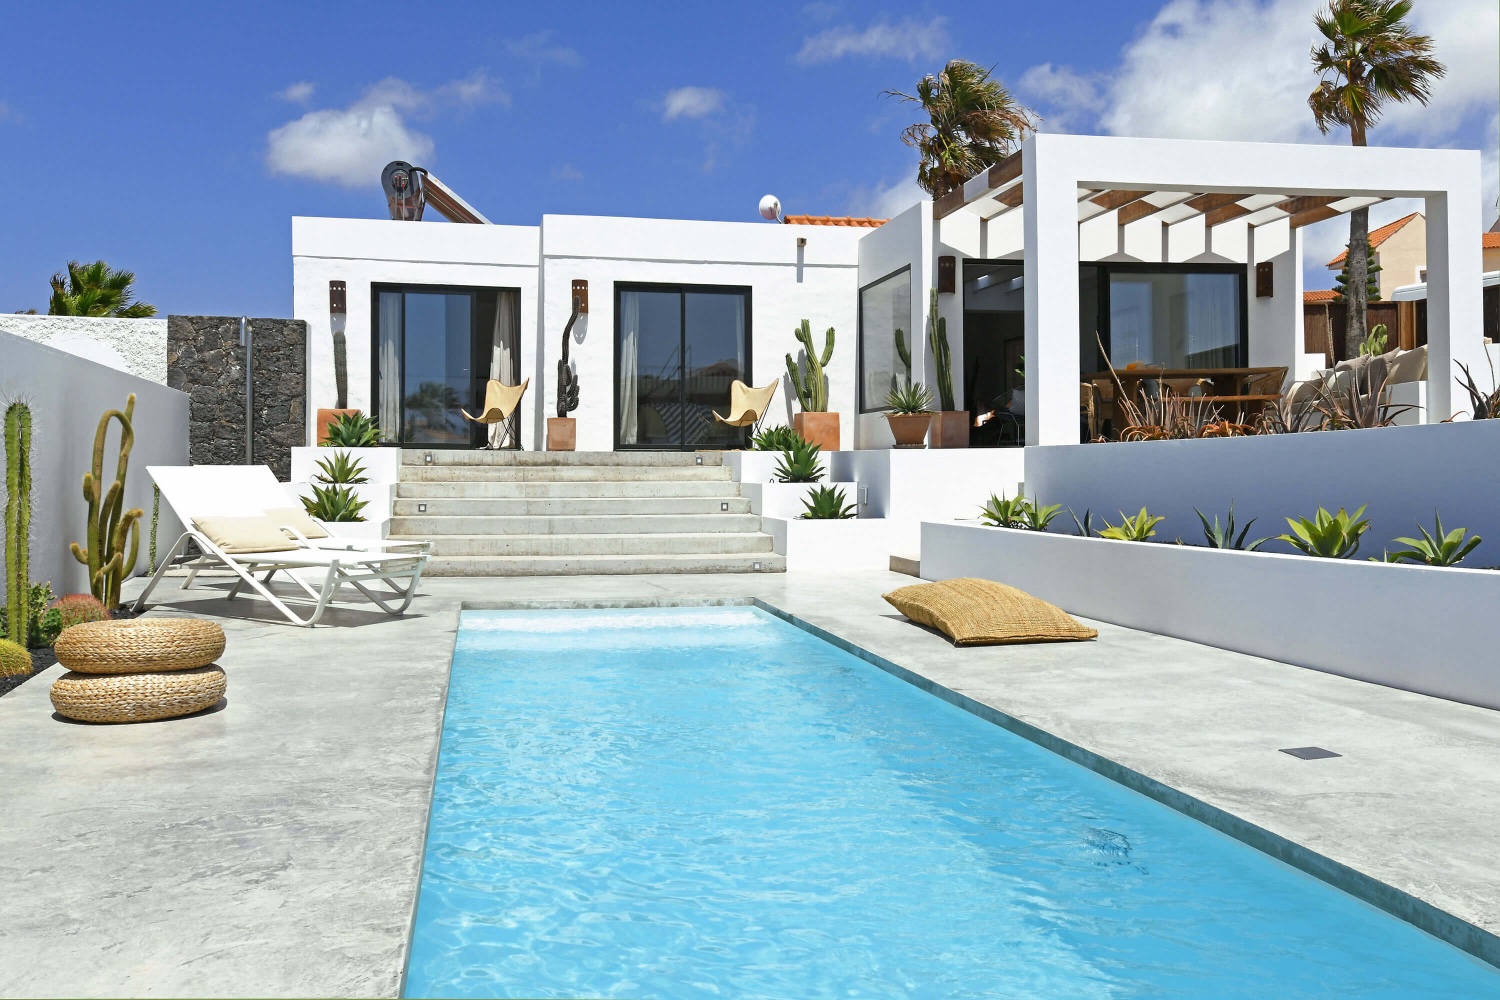 Deze uitzonderlijk mooie en moderne villa met een groot privézwembad is smaakvol ingericht en perfect gelegen op slechts een paar minuten lopen van de prachtige stranden van La Pared en Viejo Rey.